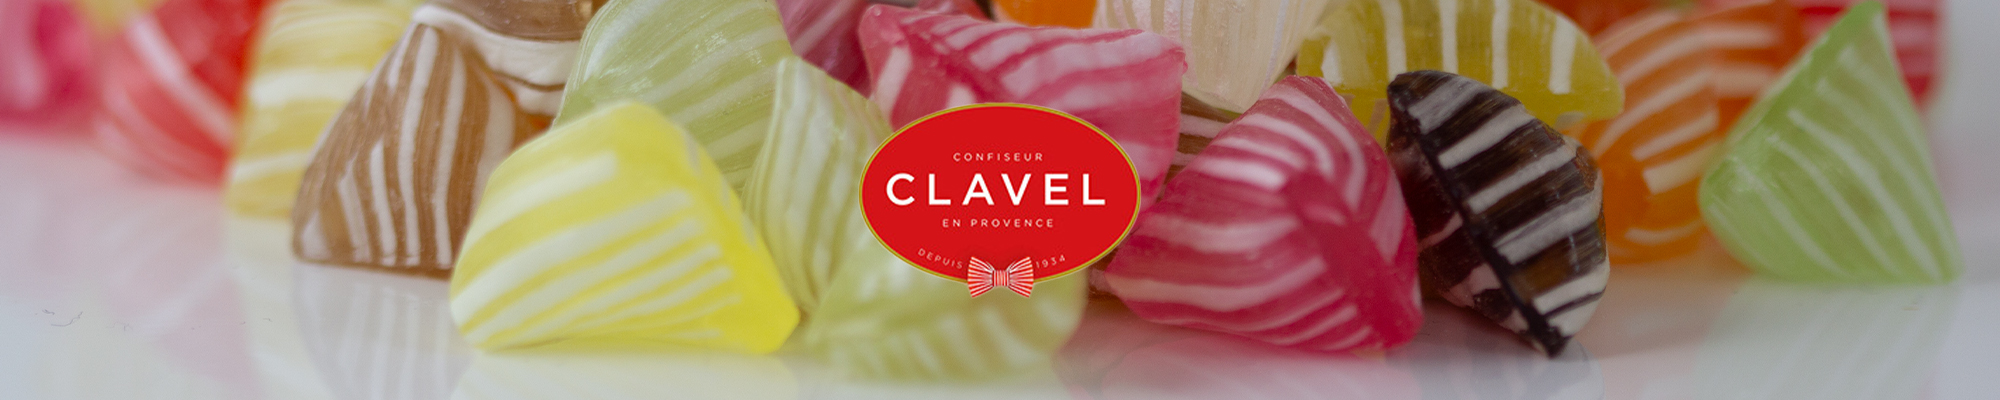 Confiseur Clavel